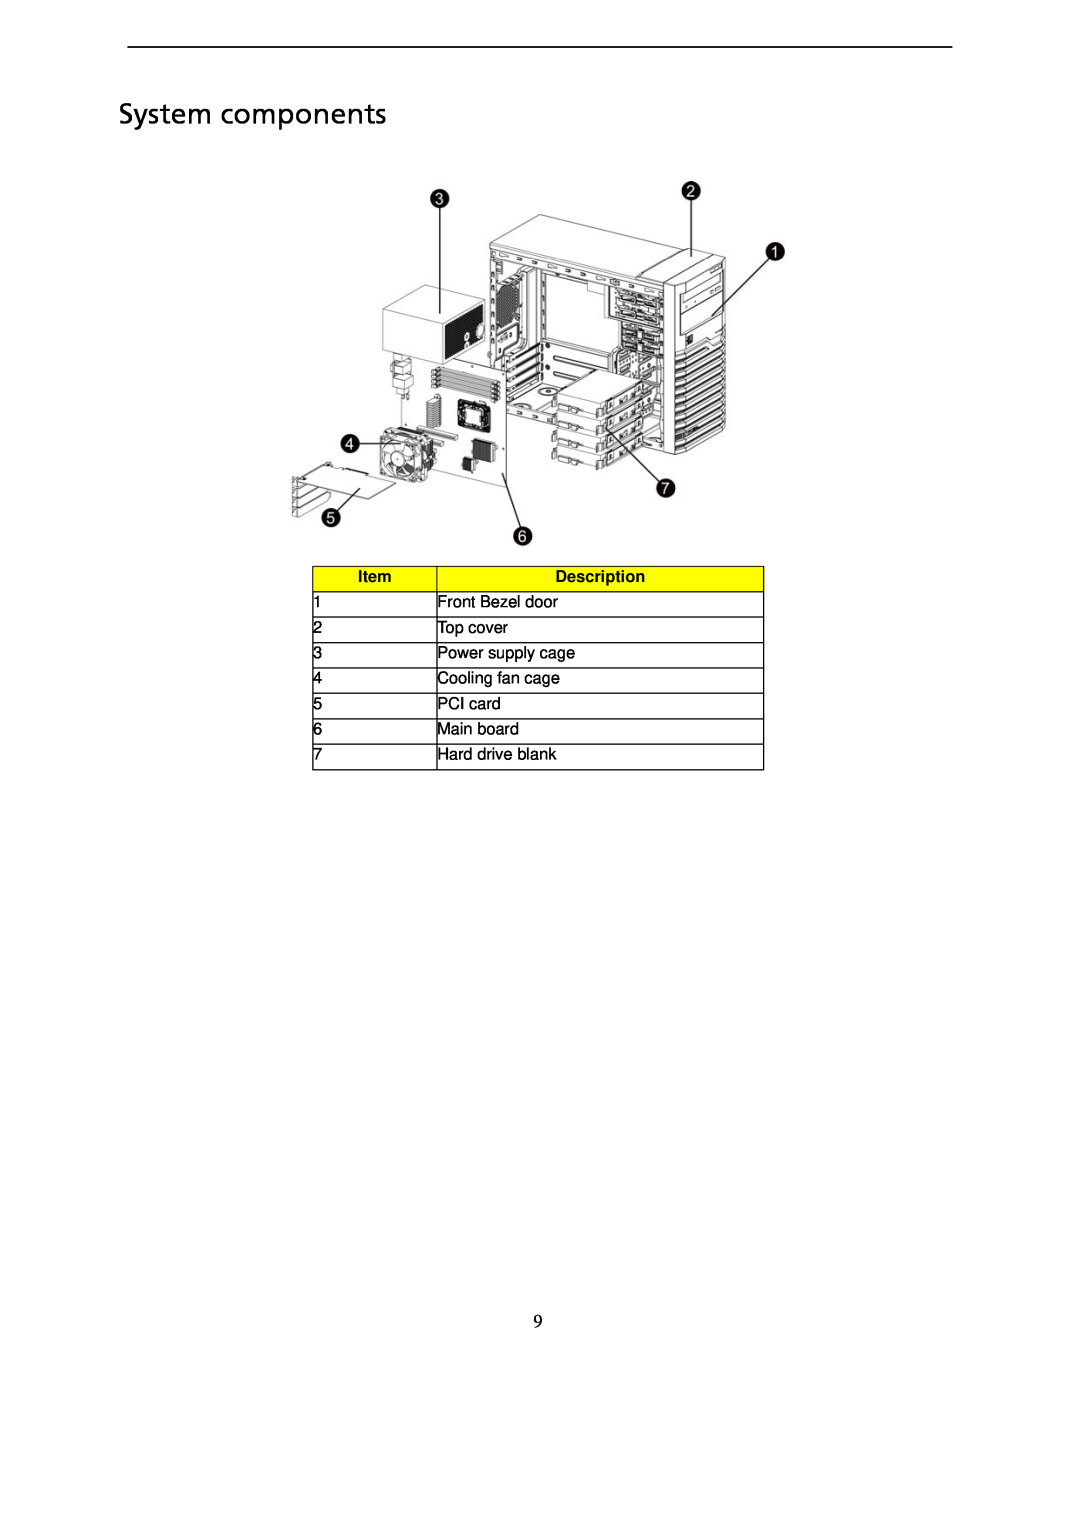 Gateway GT115 manual System components, Description 